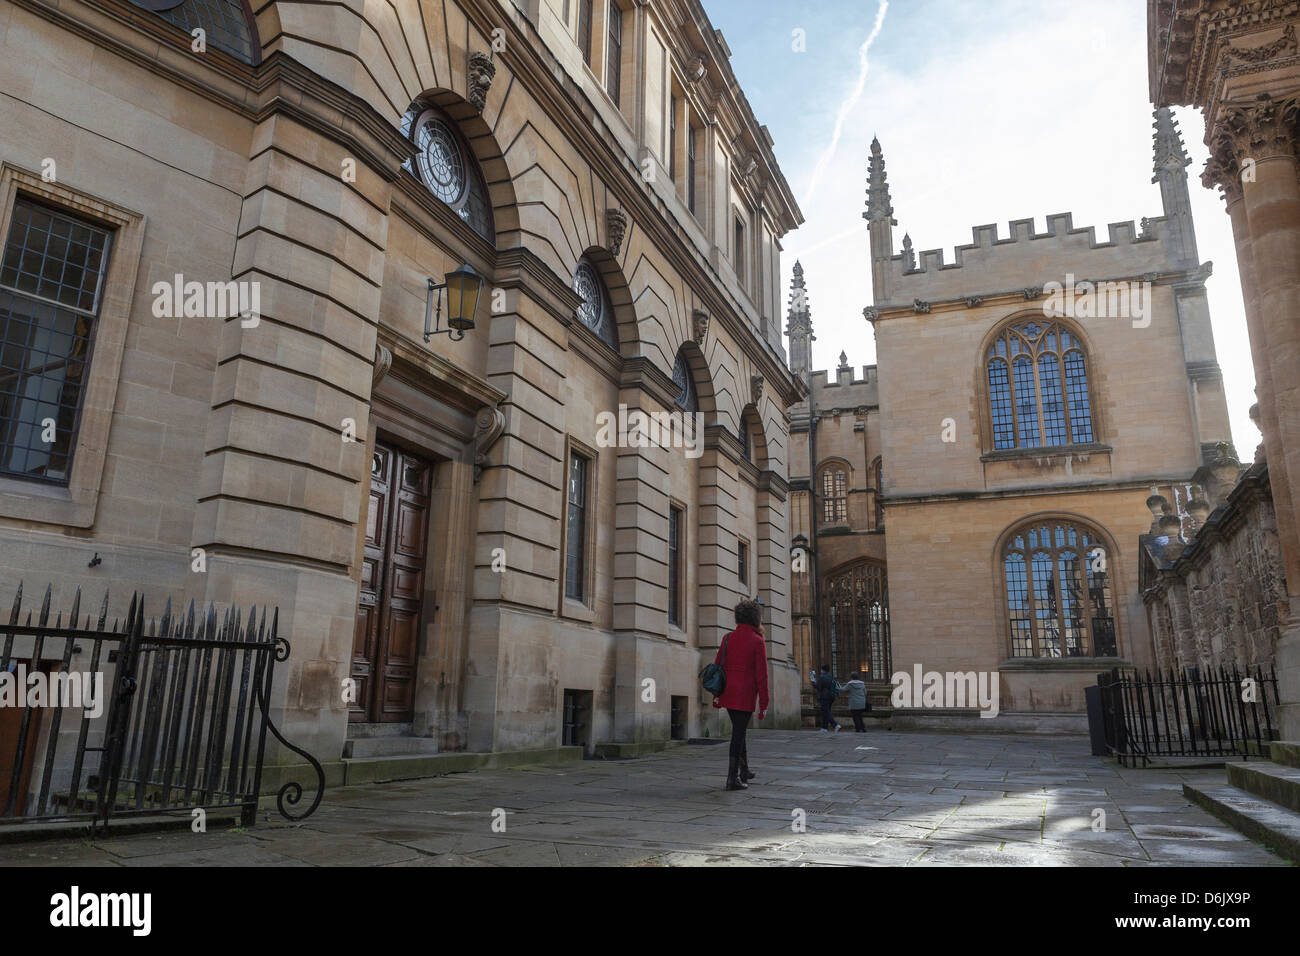 Le passé d'errance Sheldonian Theatre à la Bodleian Library, Oxford, Oxfordshire, Angleterre, Royaume-Uni, Europe Banque D'Images